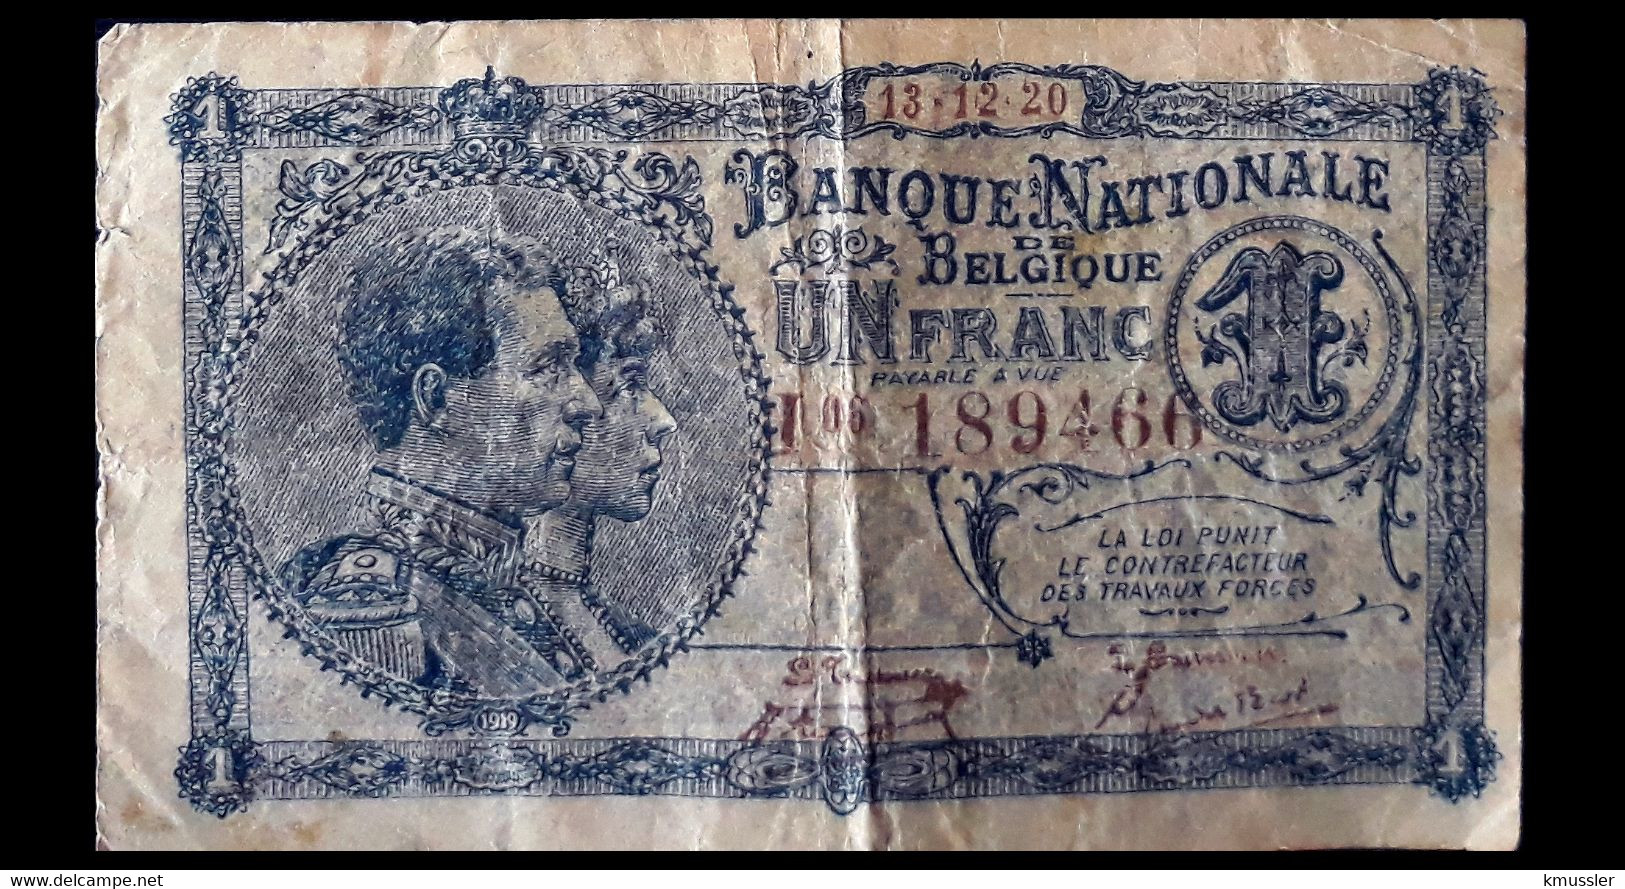 # # # Seltene Banknote Belgien (Belgium) 1 Francs 1920 # # # - 1 Franc